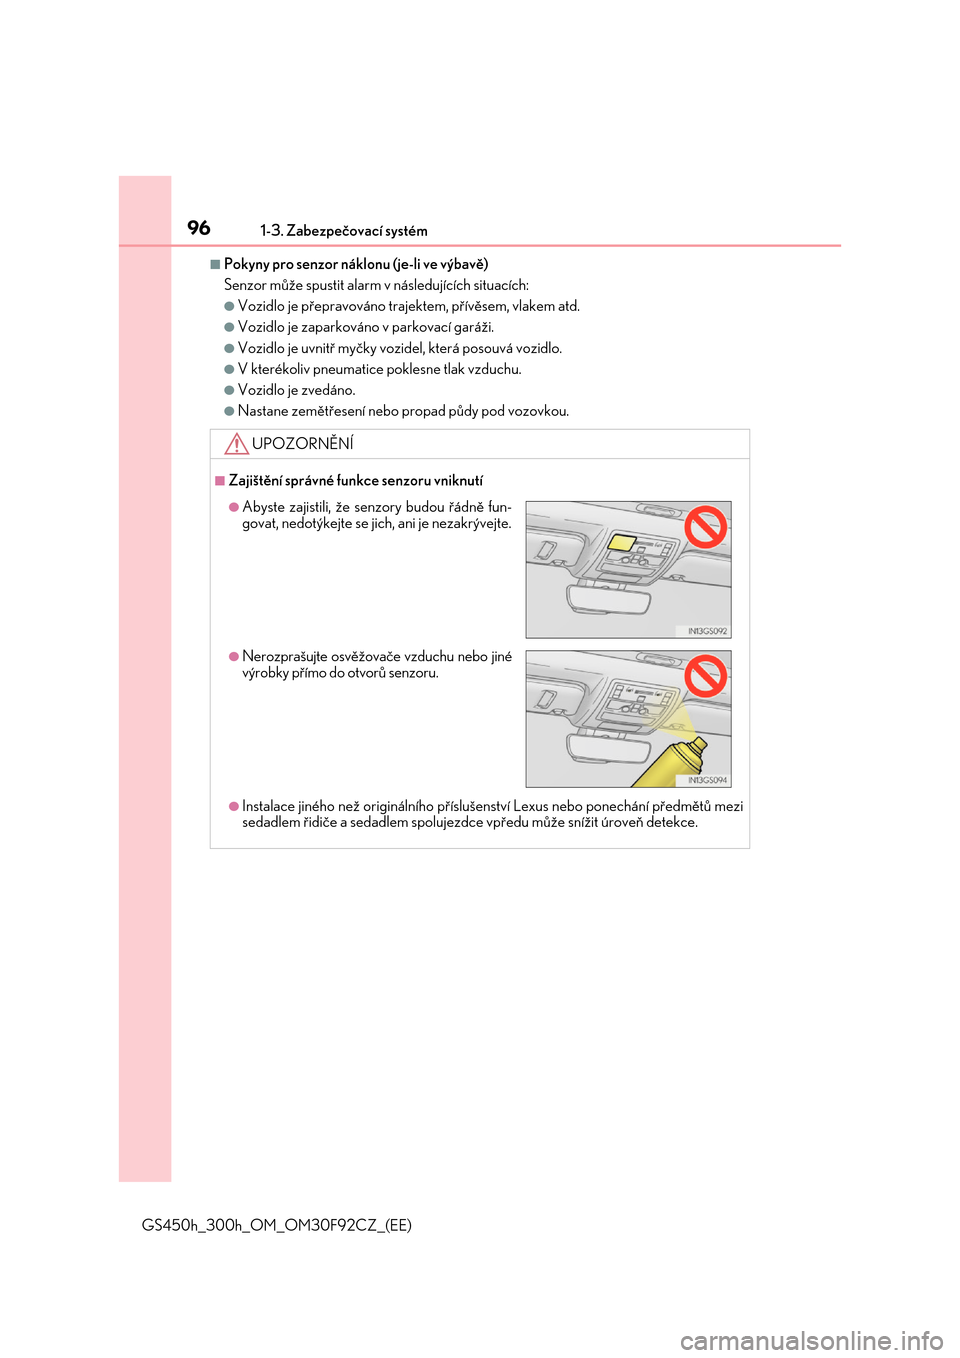 Lexus GS450h 2017  Návod k obsluze (in Czech) 961-3. Zabezpečovací systém
GS450h_300h_OM_OM30F92CZ_(EE)
■Pokyny pro senzor náklonu (je-li ve výbavě) 
Senzor může spustit alarm  v následujících situacích:
●Vozidlo je přepravováno